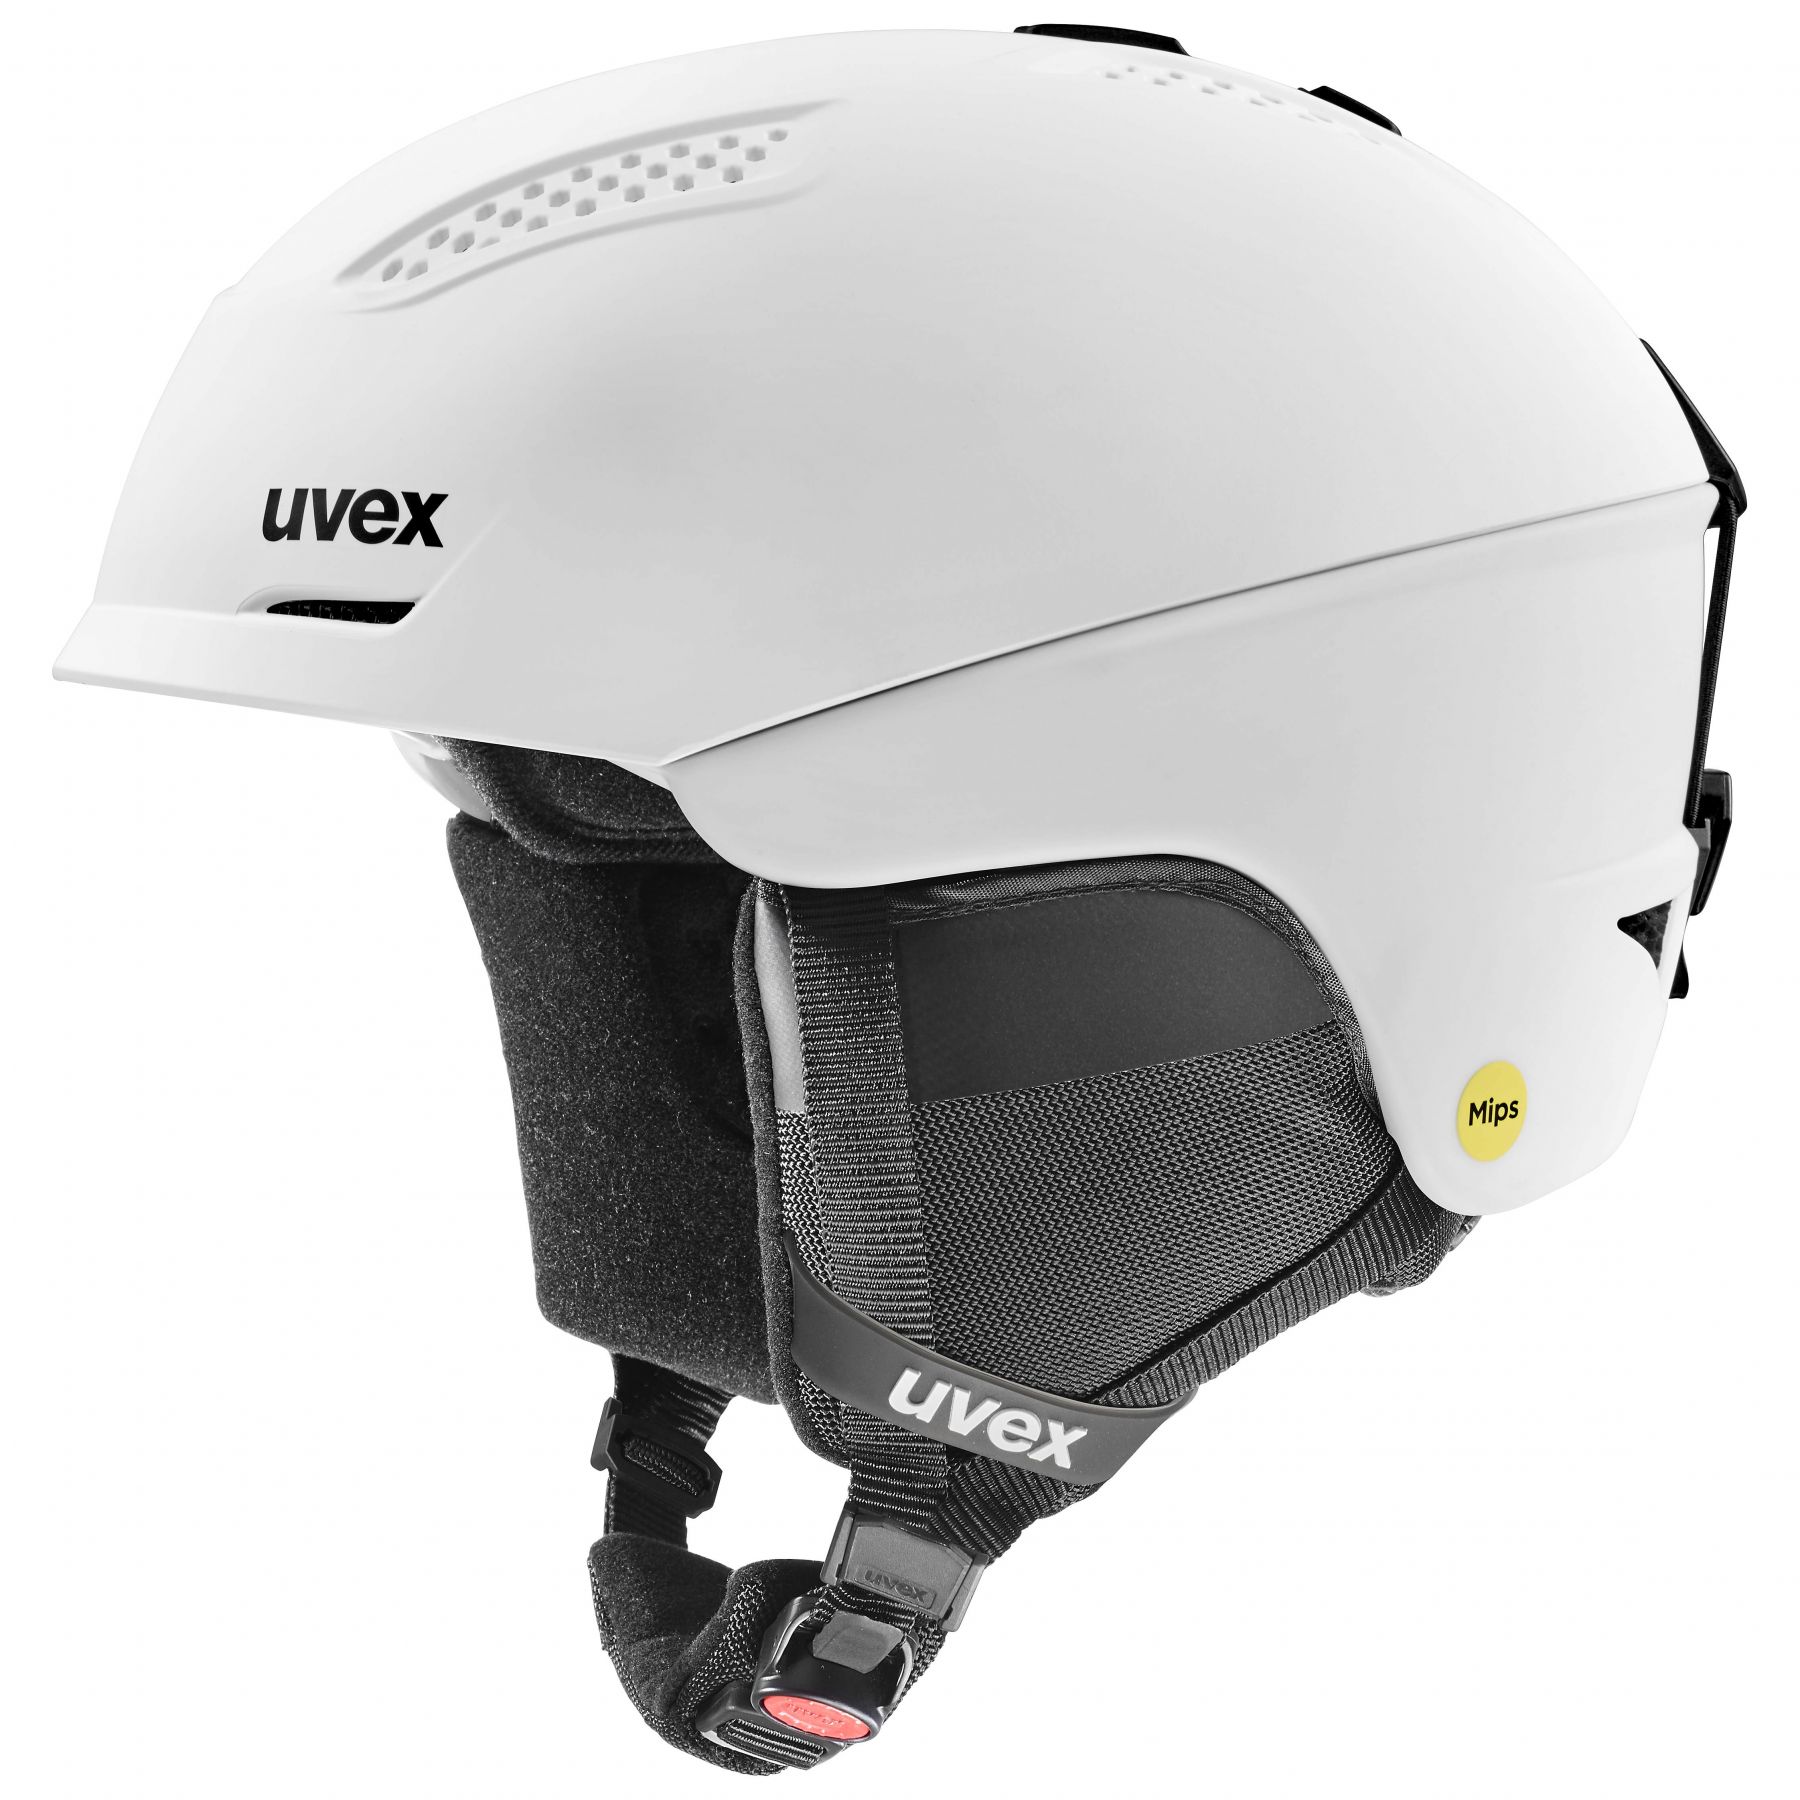 Billede af Uvex Ultra MIPS, skihjelm, hvid